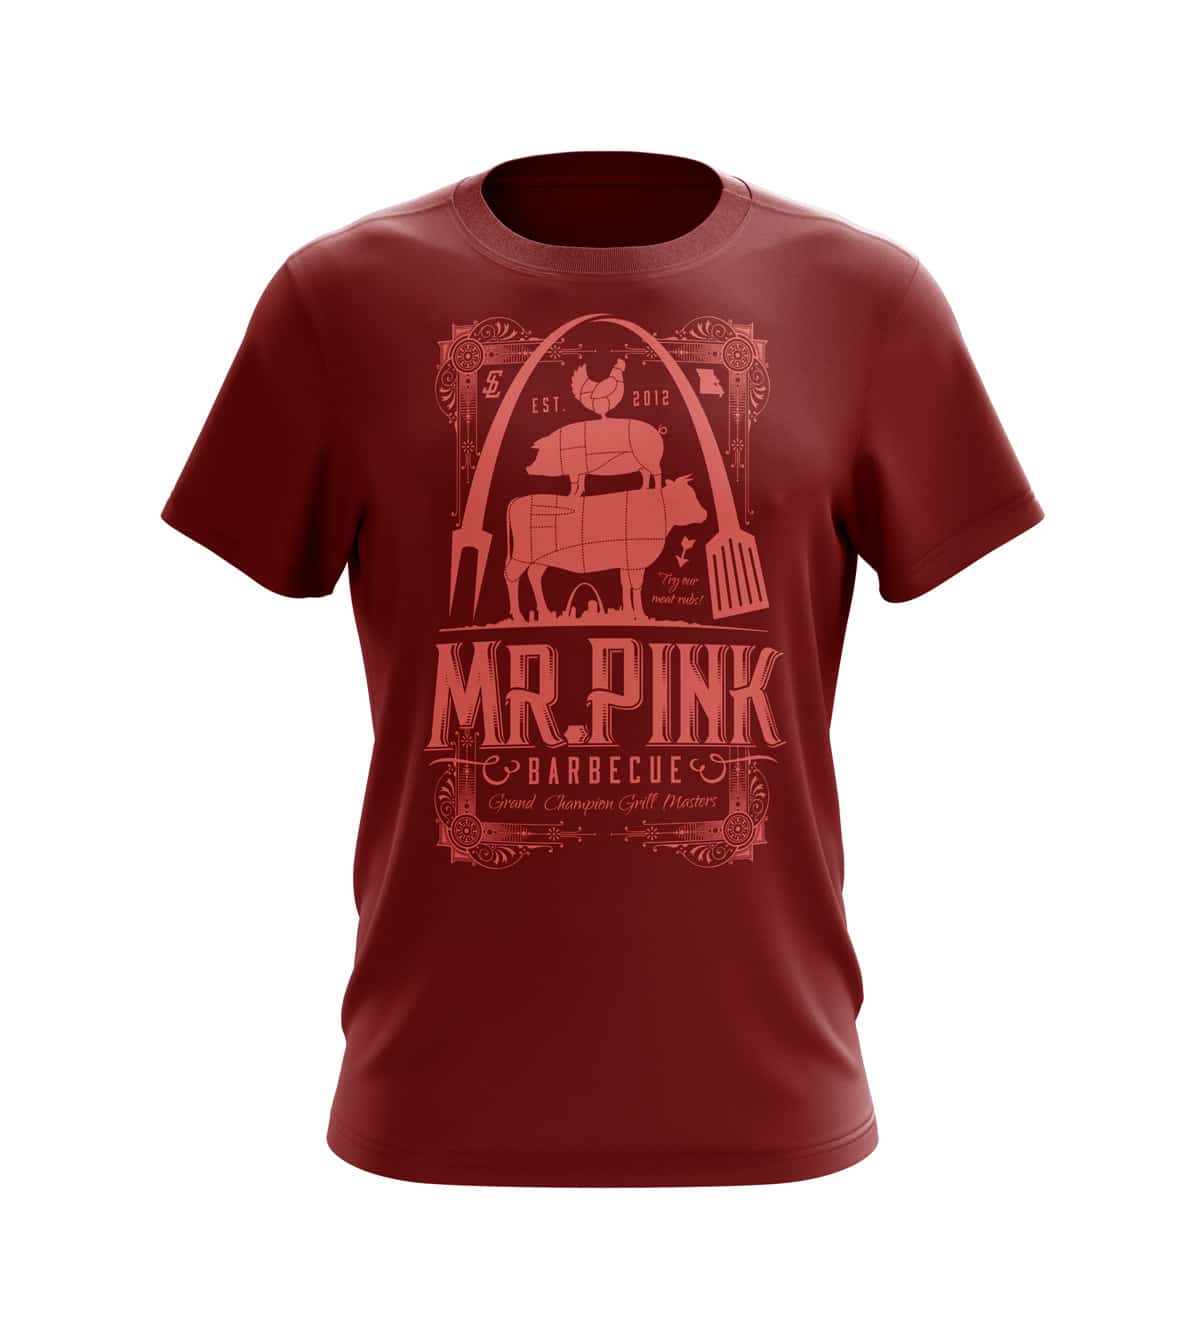 Mr. Pink Vintage T-shirt Design